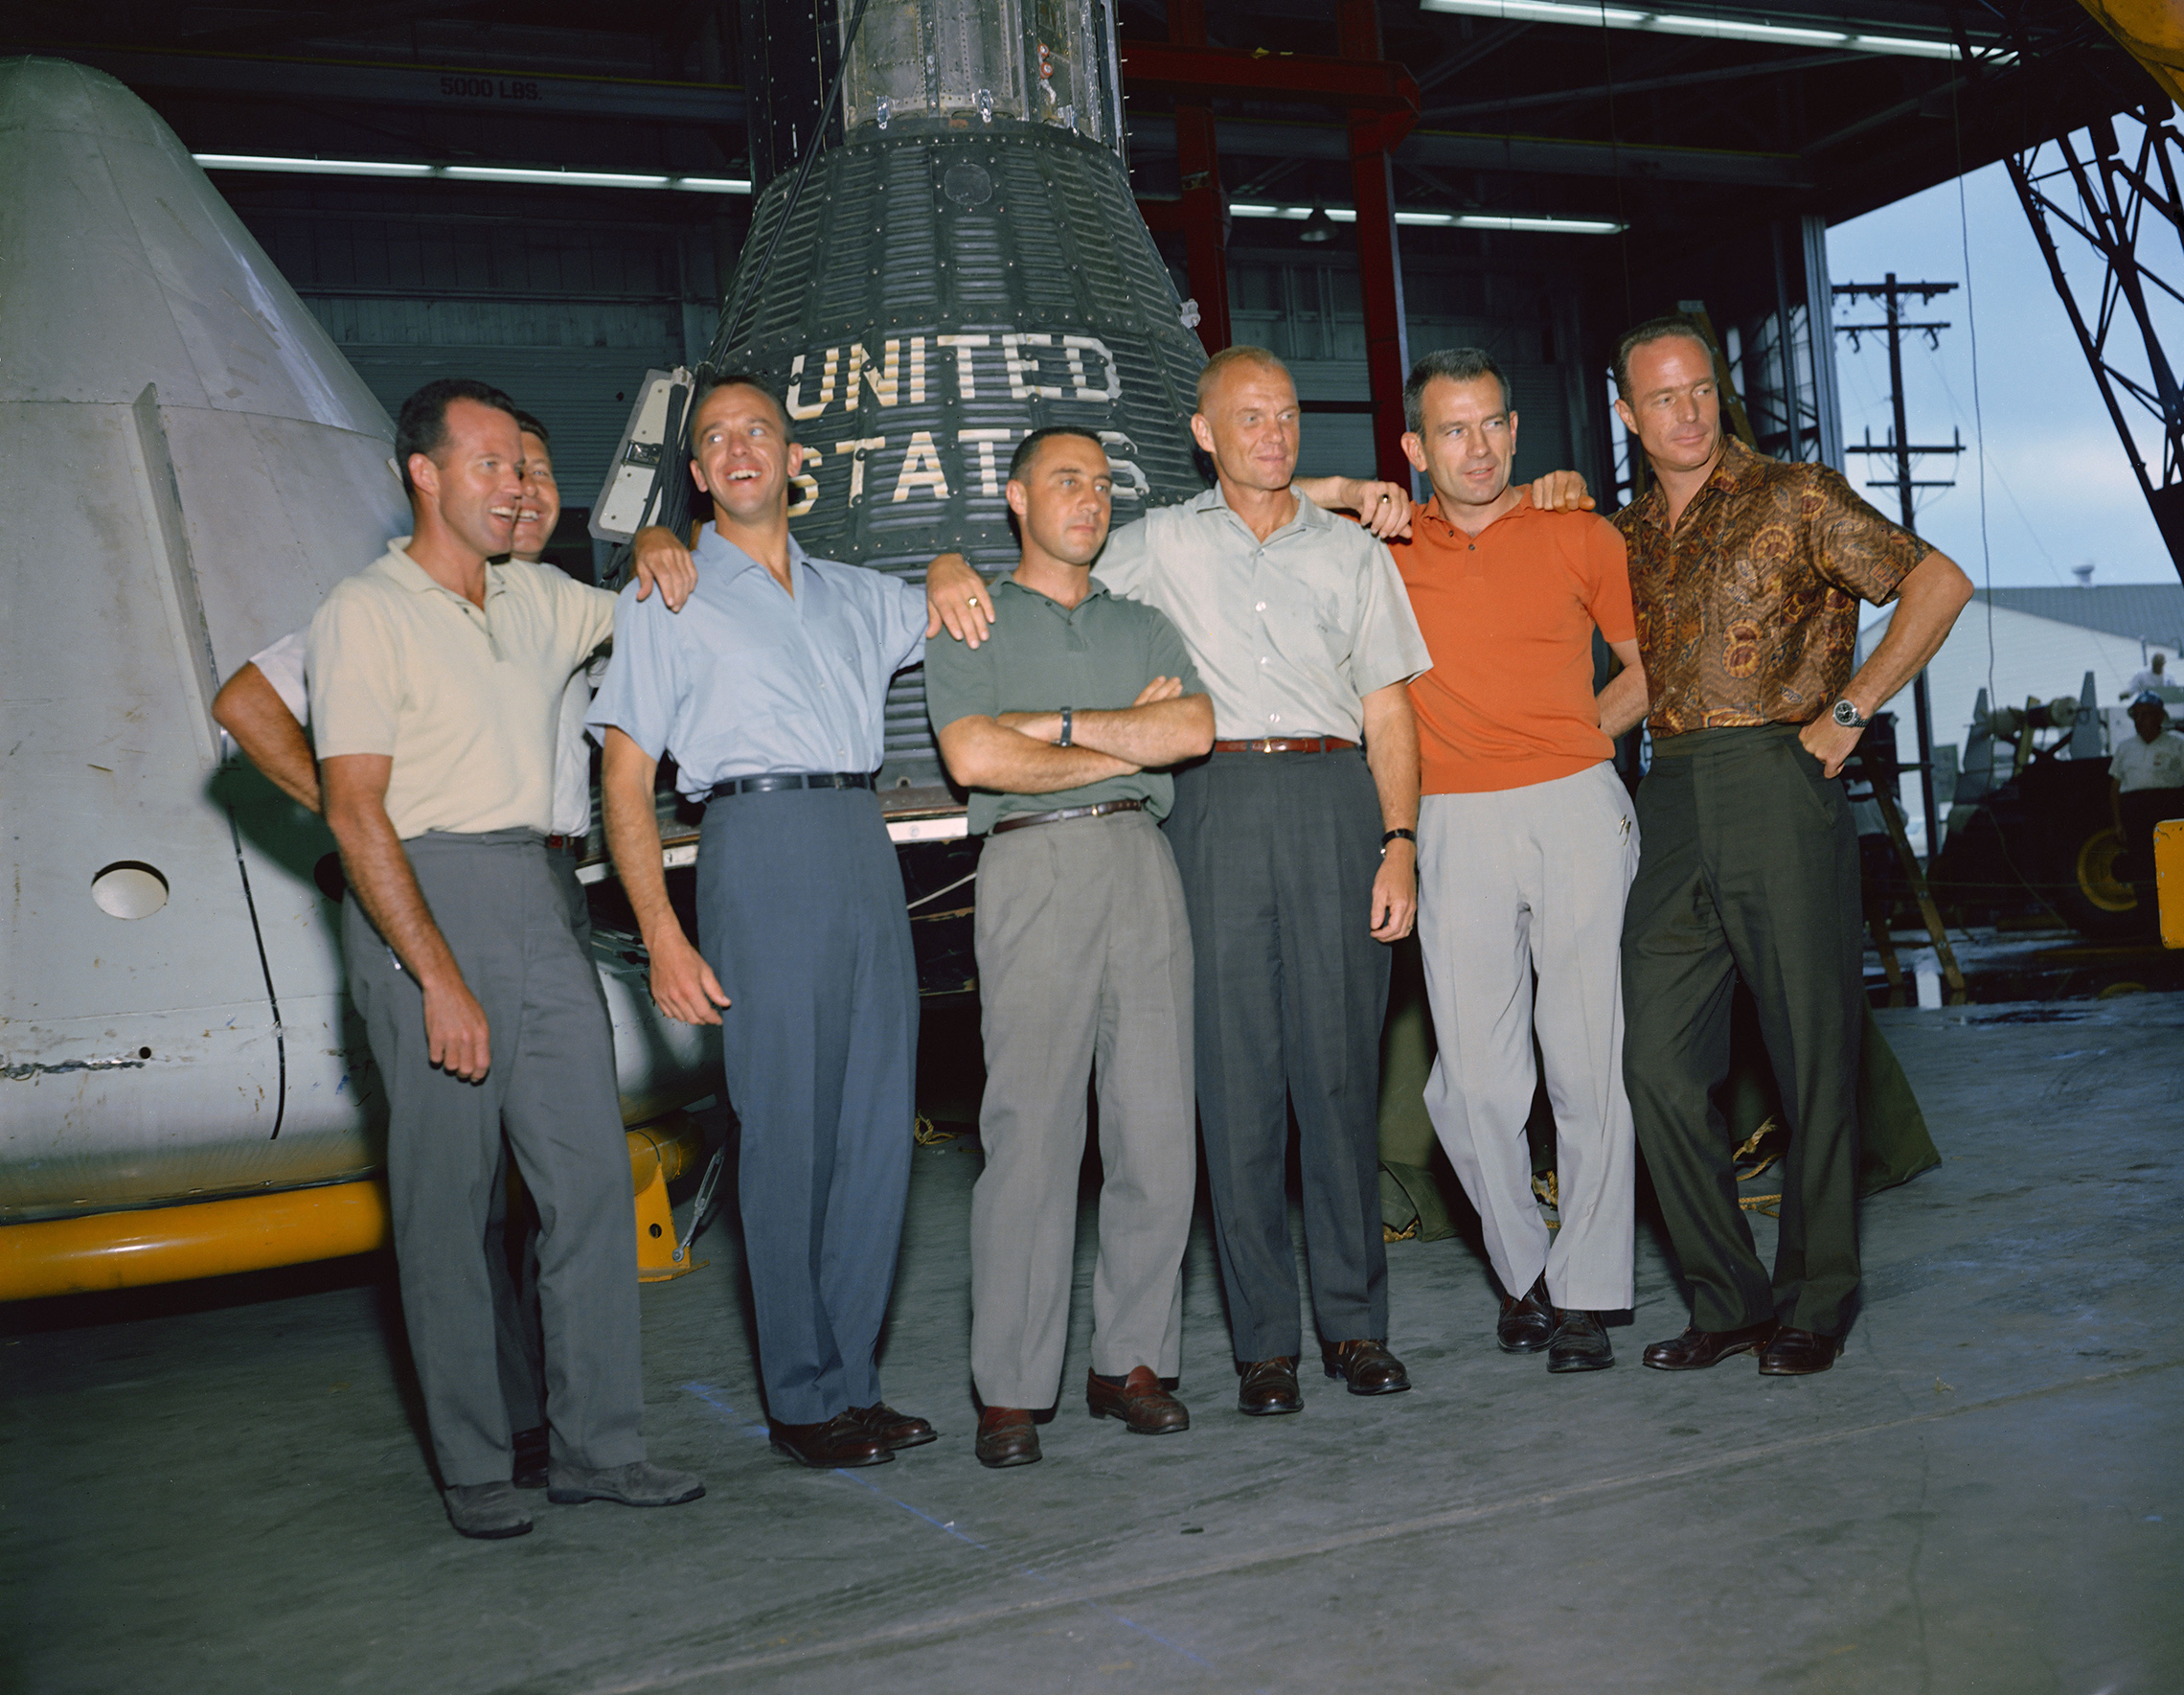 9. dubna 1959, NASA první správce, Dr. Keith Glennan, oznámil jména agentury první skupiny astronautů na tiskové konferenci ve Washingtonu, d. c., Nyní známý jako Původní Sedm, jsou zahrnuty tři Námořních letců, M. Scott Carpenter, Walter M. Schirra, Jr., a Alan B. Shepard, Jr.; tři letectva piloti, L. Gordon Cooper Jr., Virgil I. (Gus) Grissom, a Donald K. (Pape) Slayton; spolu s Marine Corps letec John H. Glenn Jr. Tuto fotografii skupina původní astronauti Mercury byla pořízena v červnu 1963 v Posádkou Kosmické lodi Centra (MSC), teď Johnson Space Center v Houstonu, Texas. Astronauti jsou zleva doprava: Cooper, Schirra, Shepard, Grissom, Glenn, Slayton a Carpenter. Projekt Merkur se stal prvním velkým podnikem NASA. Cílem programu bylo umístit kosmickou loď s hodnocením člověka na oběžnou dráhu kolem Země, sledovat výkon astronautů v takových podmínkách a bezpečně obnovit astronaut a kosmickou loď. Lety Mercury prokázaly, že lidé mohou žít a pracovat ve vesmíru, a vydláždil cestu pro programy Gemini a Apollo i pro všechny další lidské kosmické lety. (NASA)'s first administrator, Dr. Keith Glennan, announced the names of the agency's first group of astronauts at a news conference in Washington, D.C. Now known as the "Original Seven," they included three Naval aviators, M. Scott Carpenter, Walter M. Schirra Jr., and Alan B. Shepard Jr.; three Air Force pilots, L. Gordon Cooper Jr., Virgil I. (Gus) Grissom, and Donald K. (Deke) Slayton; along with Marine Corps aviator John H. Glenn Jr. This group photo of the original Mercury astronauts was taken in June 1963 at the Manned Spacecraft Center (MSC), now Johnson Space Center, in Houston, Texas. The astronauts are, left to right: Cooper, Schirra, Shepard, Grissom, Glenn, Slayton and Carpenter. Project Mercury became NASA's first major undertaking. The objectives of the program were to place a human-rated spacecraft into orbit around Earth, observe the astronauts' performance in such conditions and safely recover the astronaut and the spacecraft. The Mercury flights proved that humans could live and work in space, and paved the way for the Gemini and Apollo programs as well as for all further human spaceflight. (NASA)